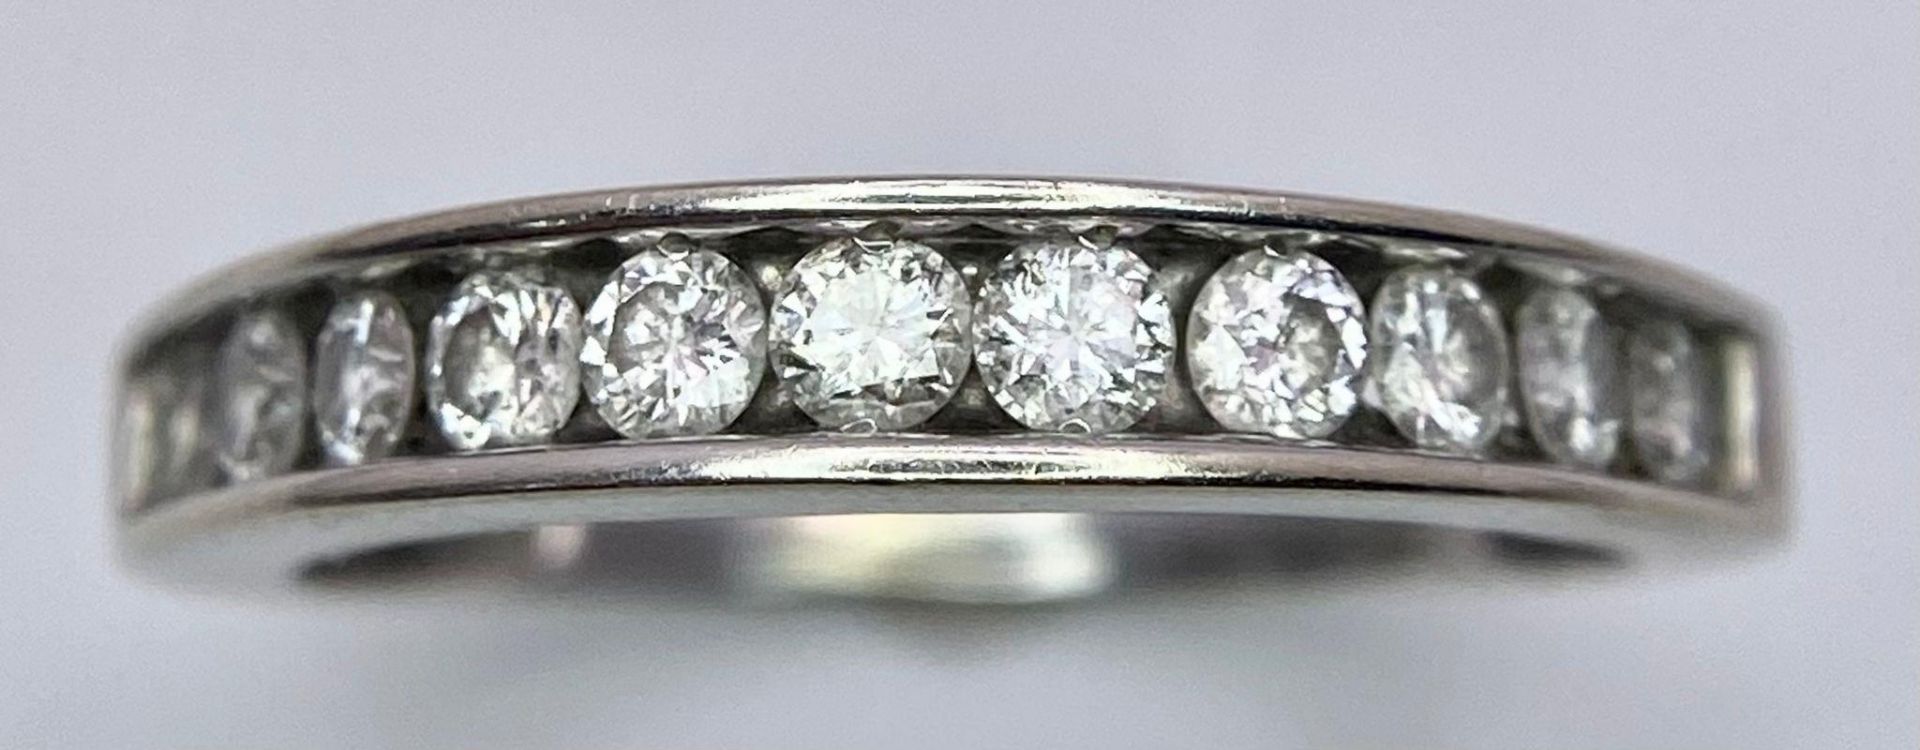 A 14K White Gold, Diamond Half-Eternity Ring. Size N. 2.55g total weight. Ref: 10437 - Bild 2 aus 4